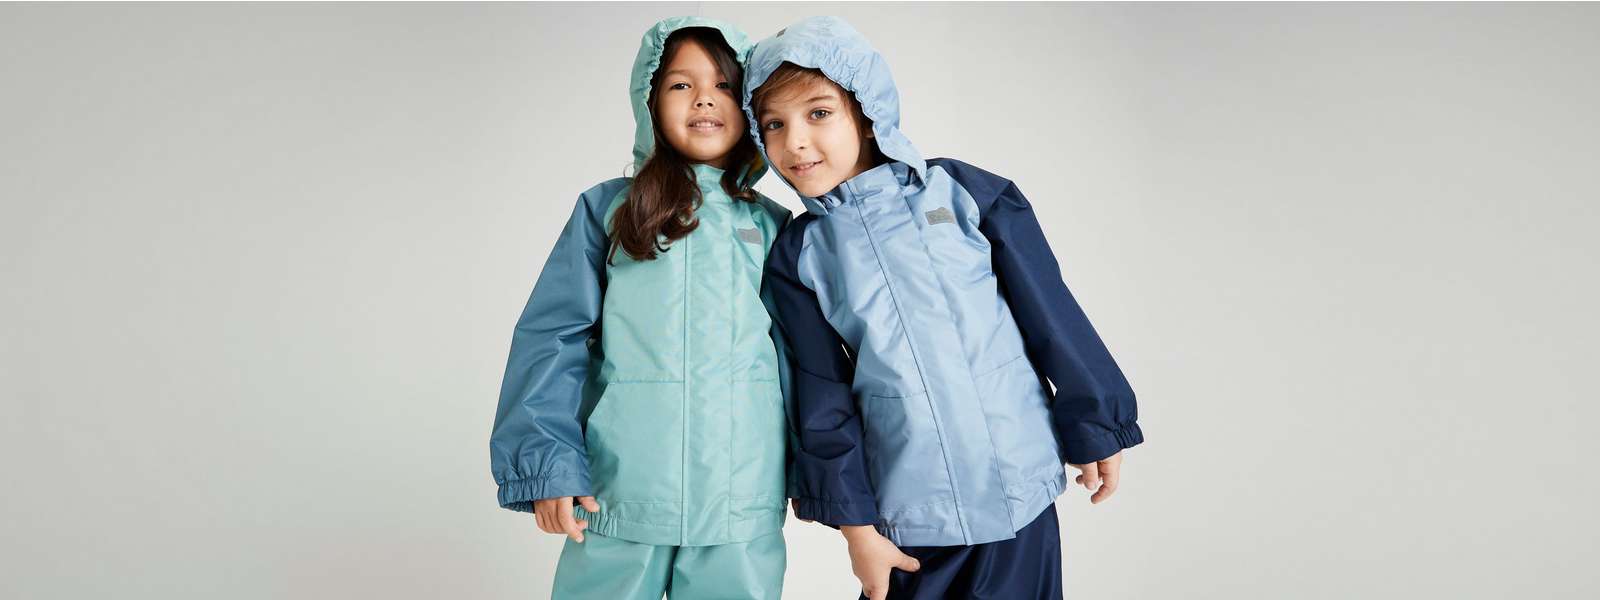 Kinder-Regenbekleidung